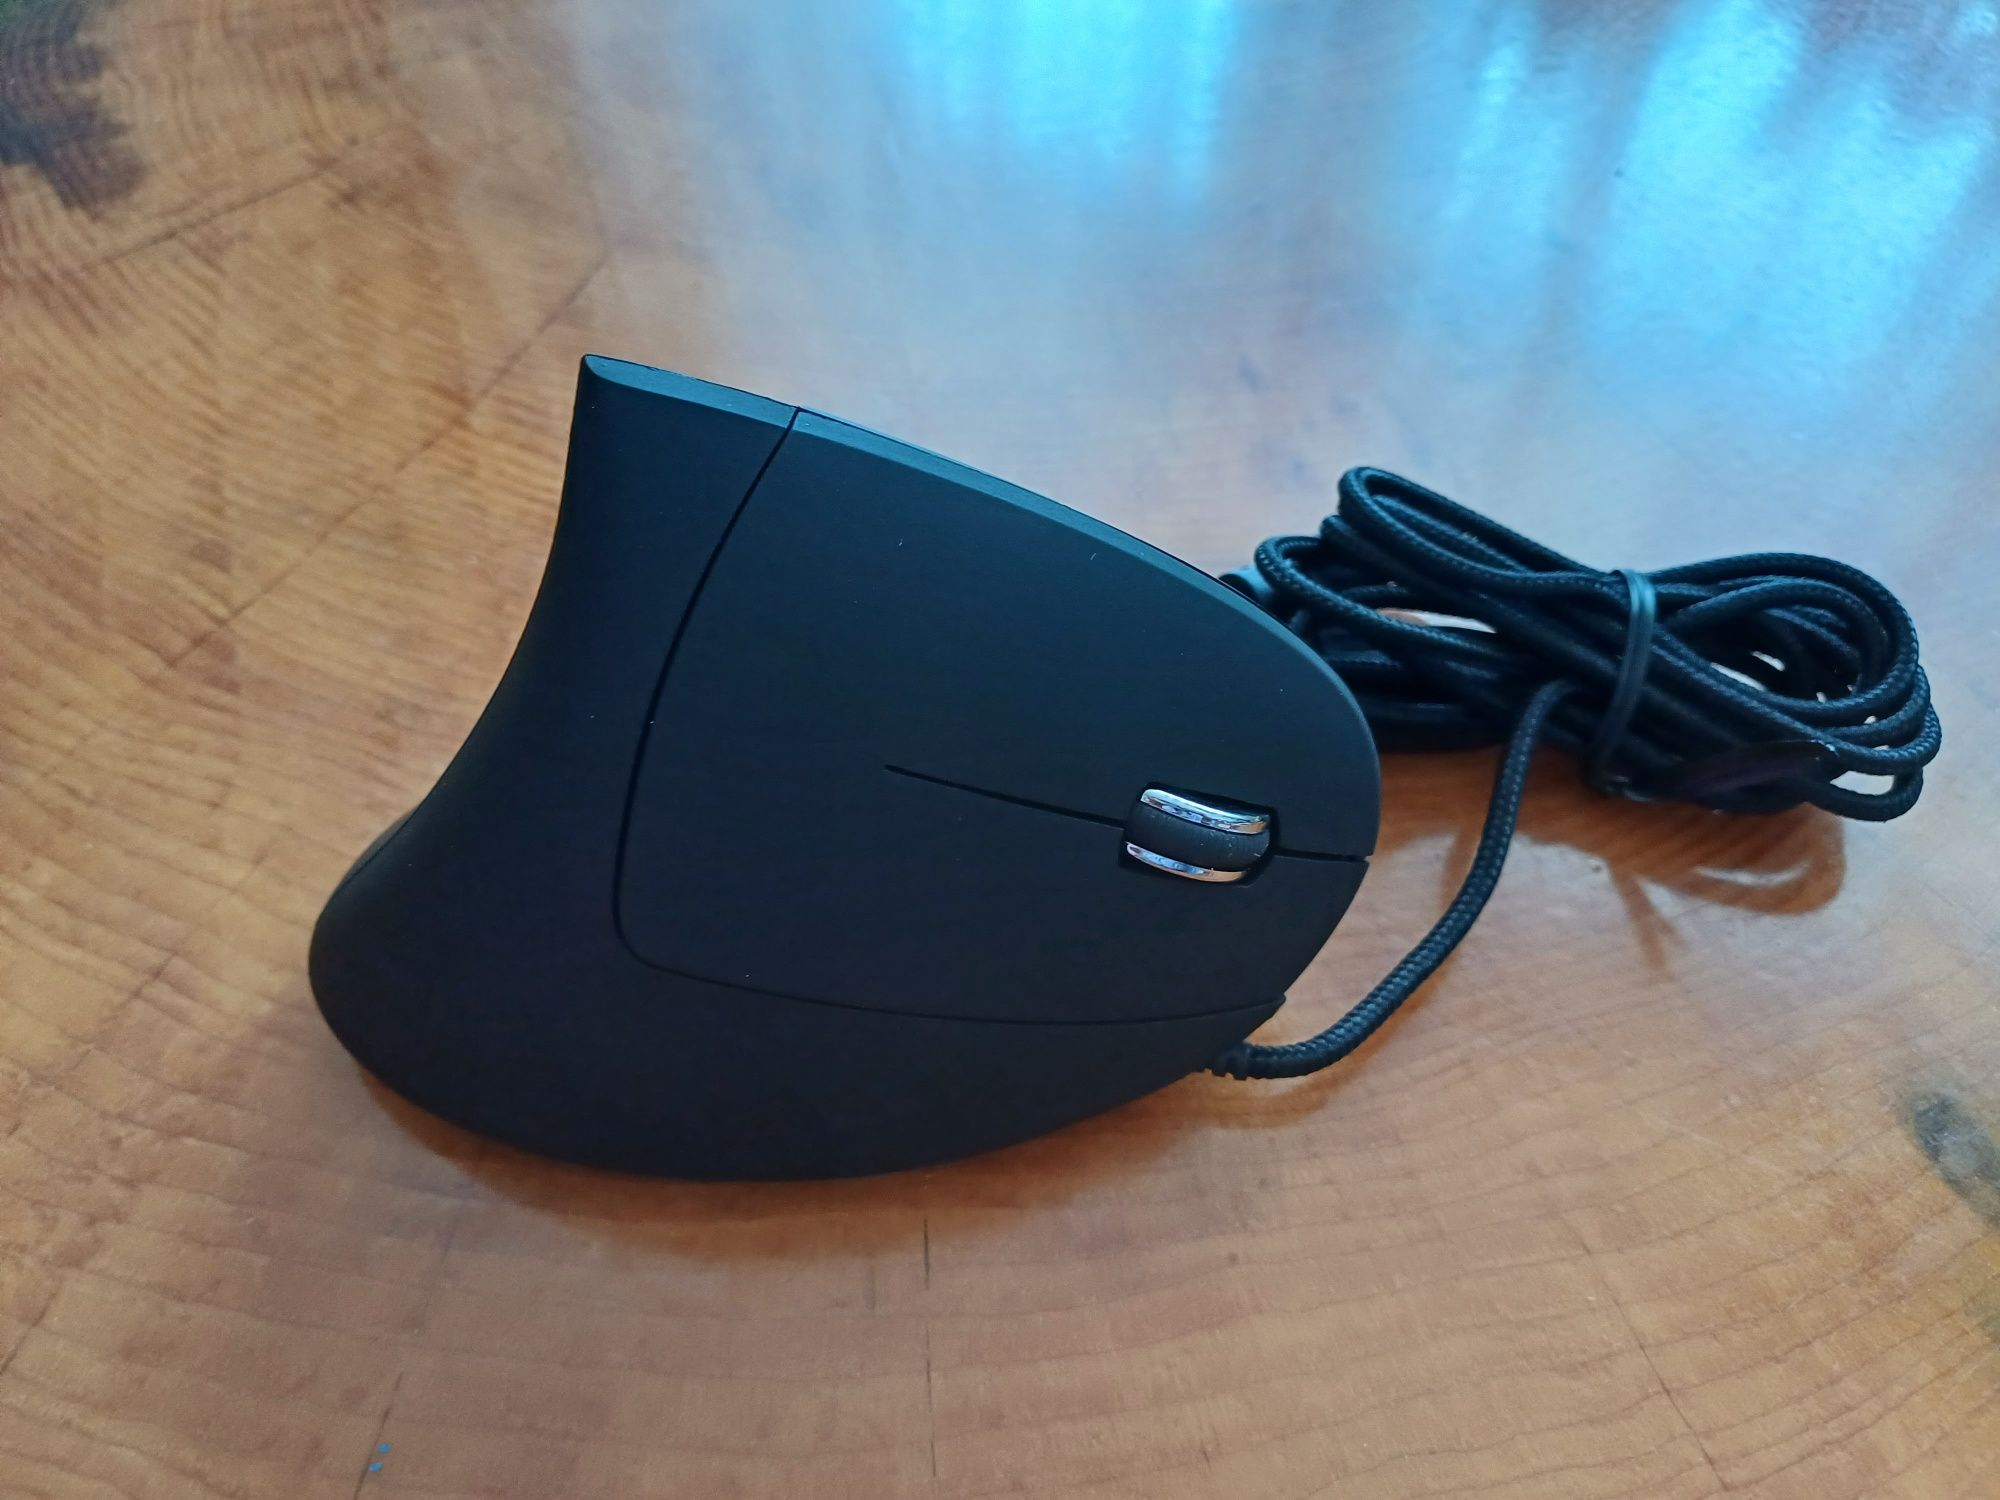 Ergonomiczna mysz komputerowa  / ergonomic mouse